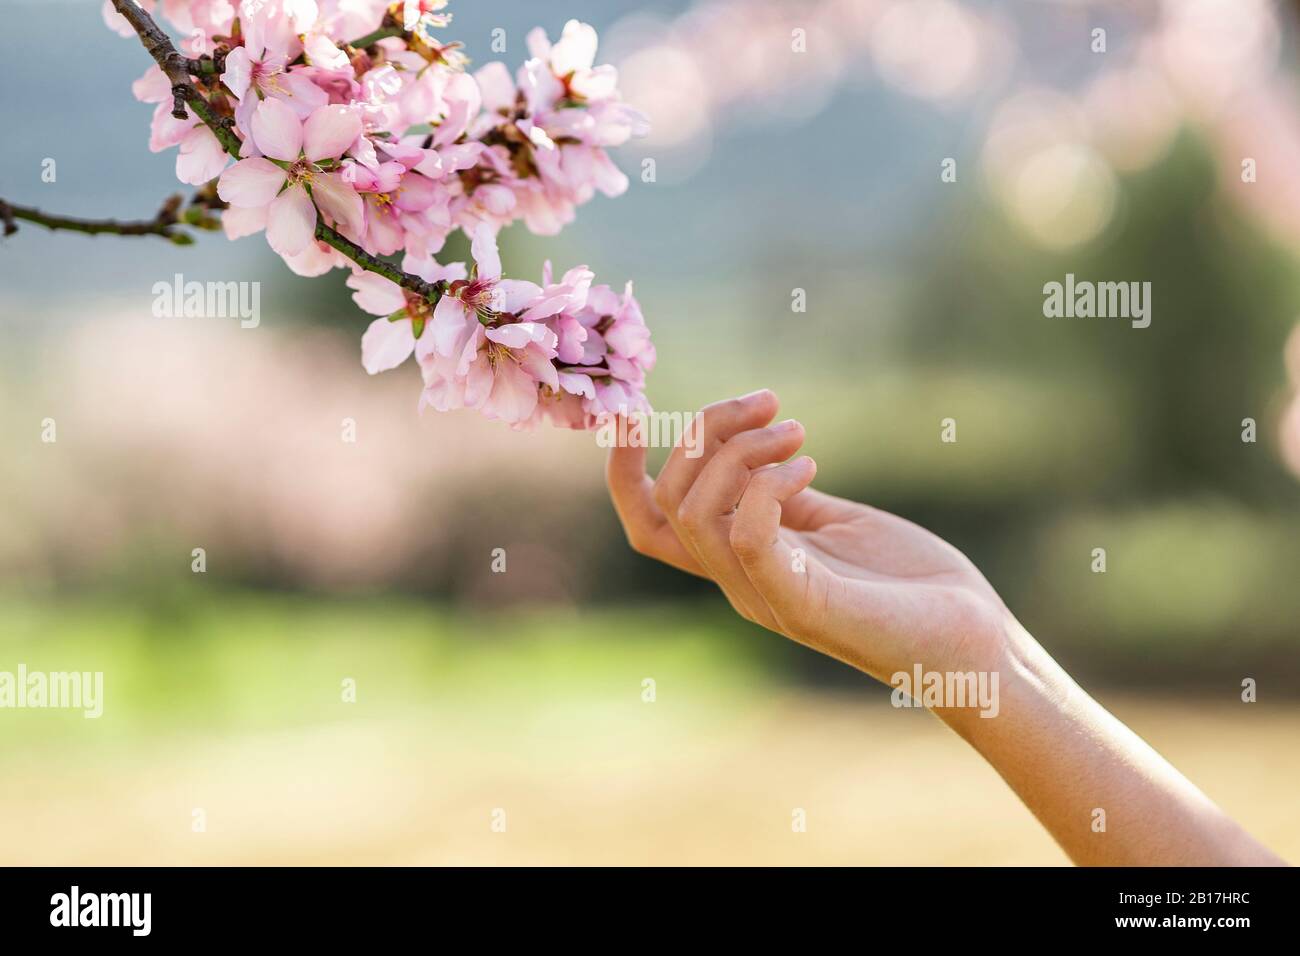 Main de fille touchant aux fleurs d'amande rose, gros plan Banque D'Images